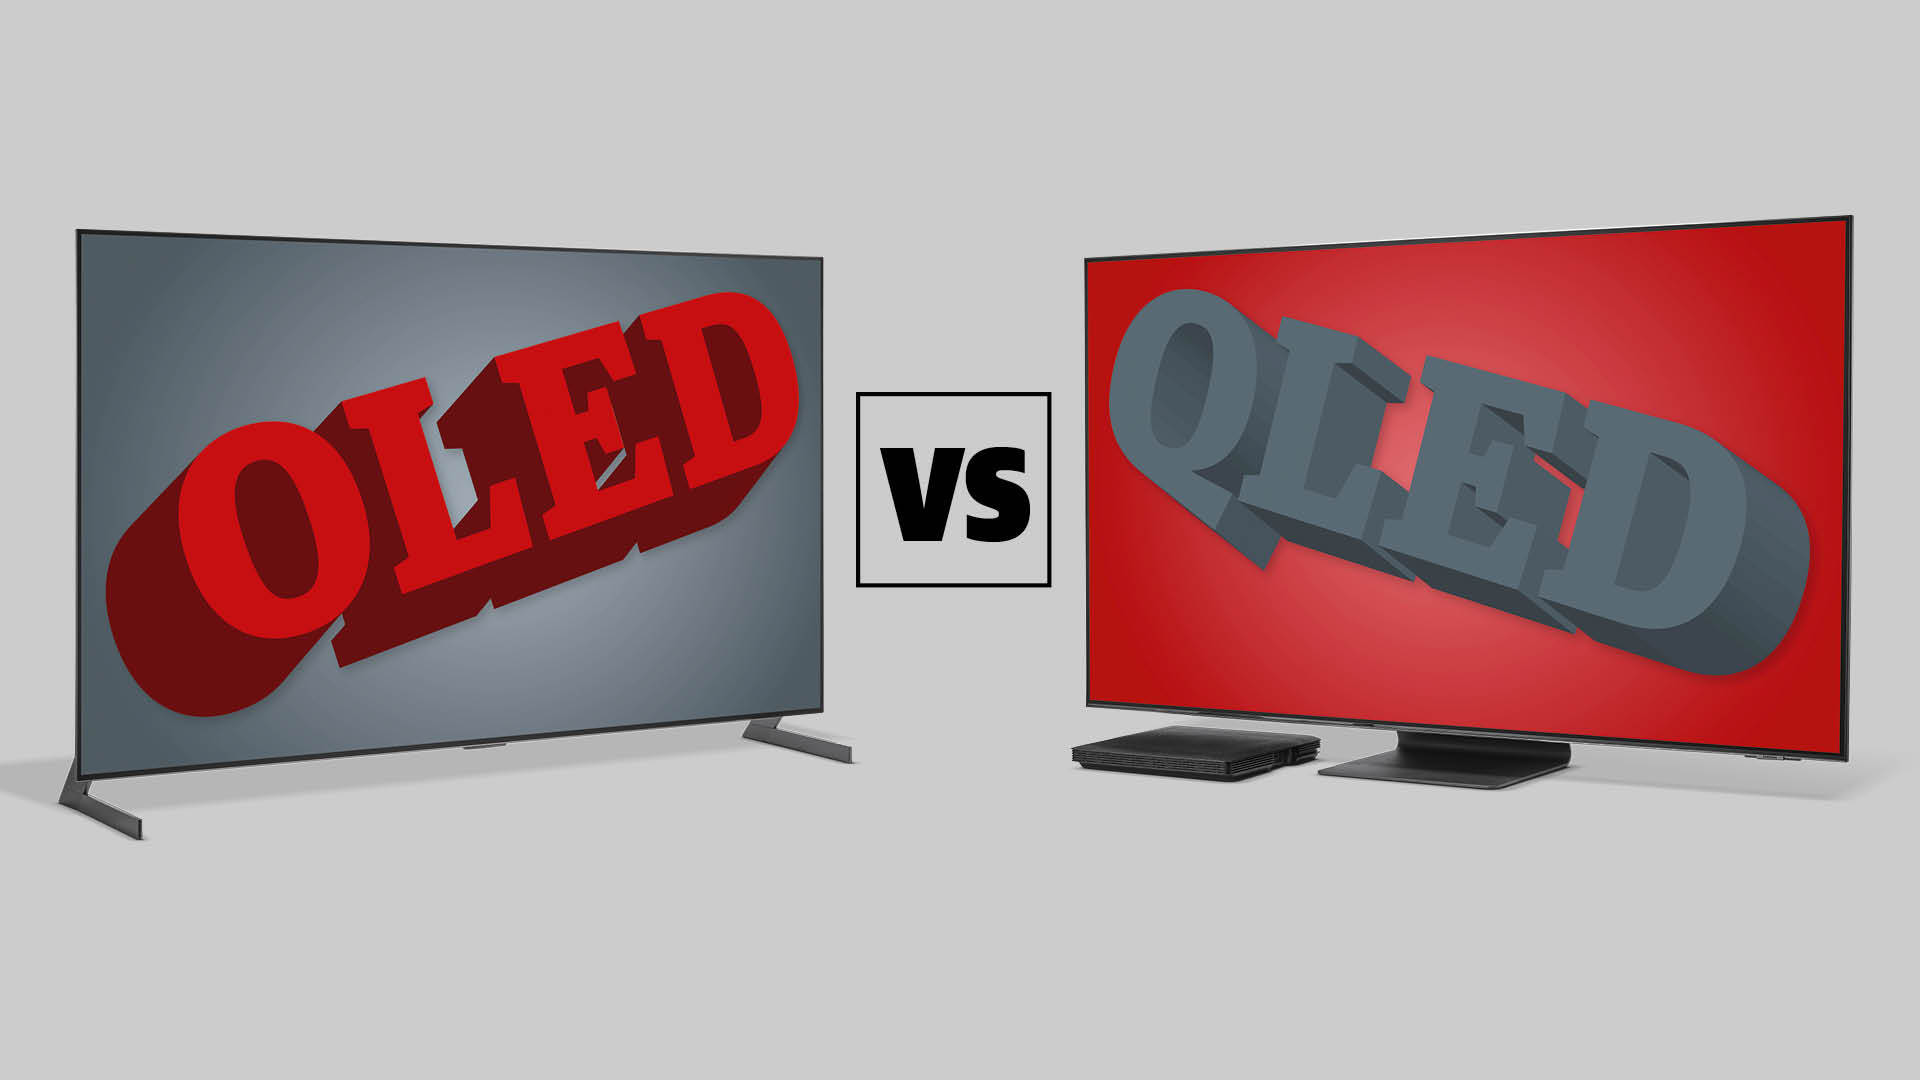 Анимационное изображение двух плоских телевизоров с надписью OLED vs QLED